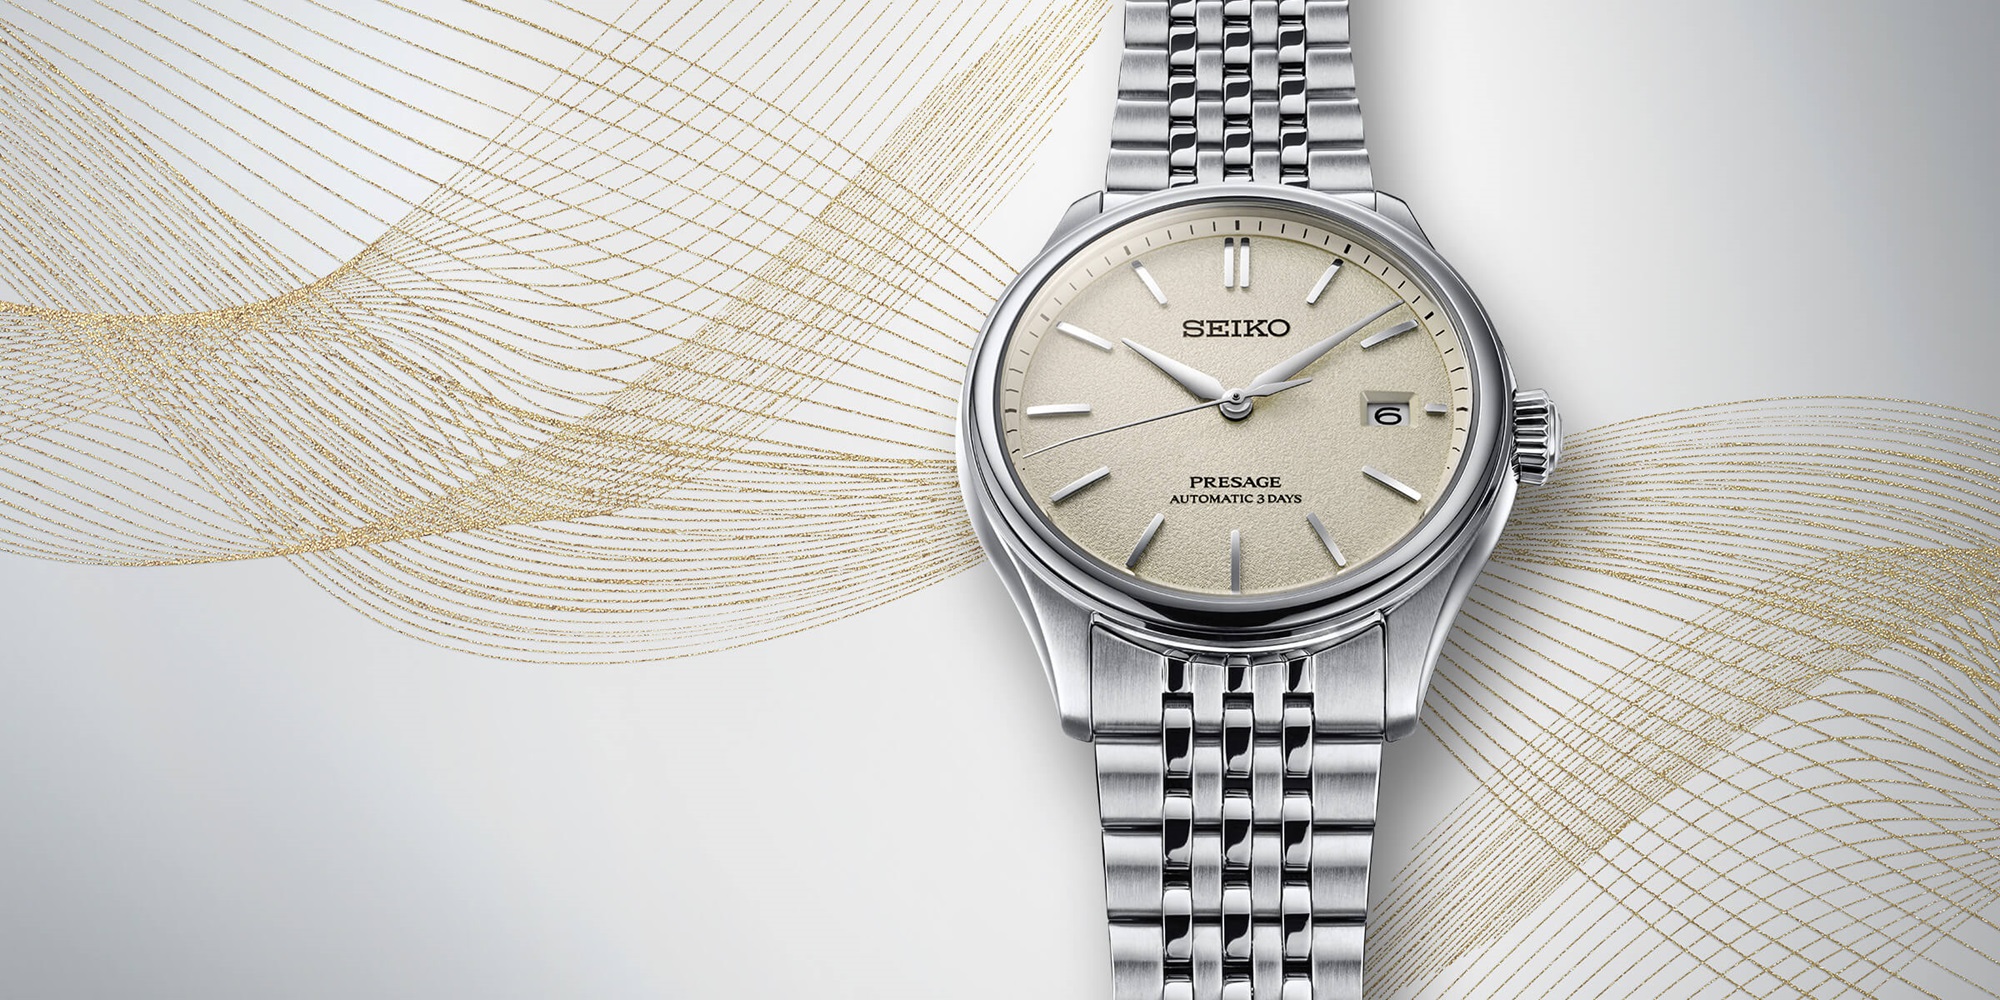 Seiko Classic Series off-white dial